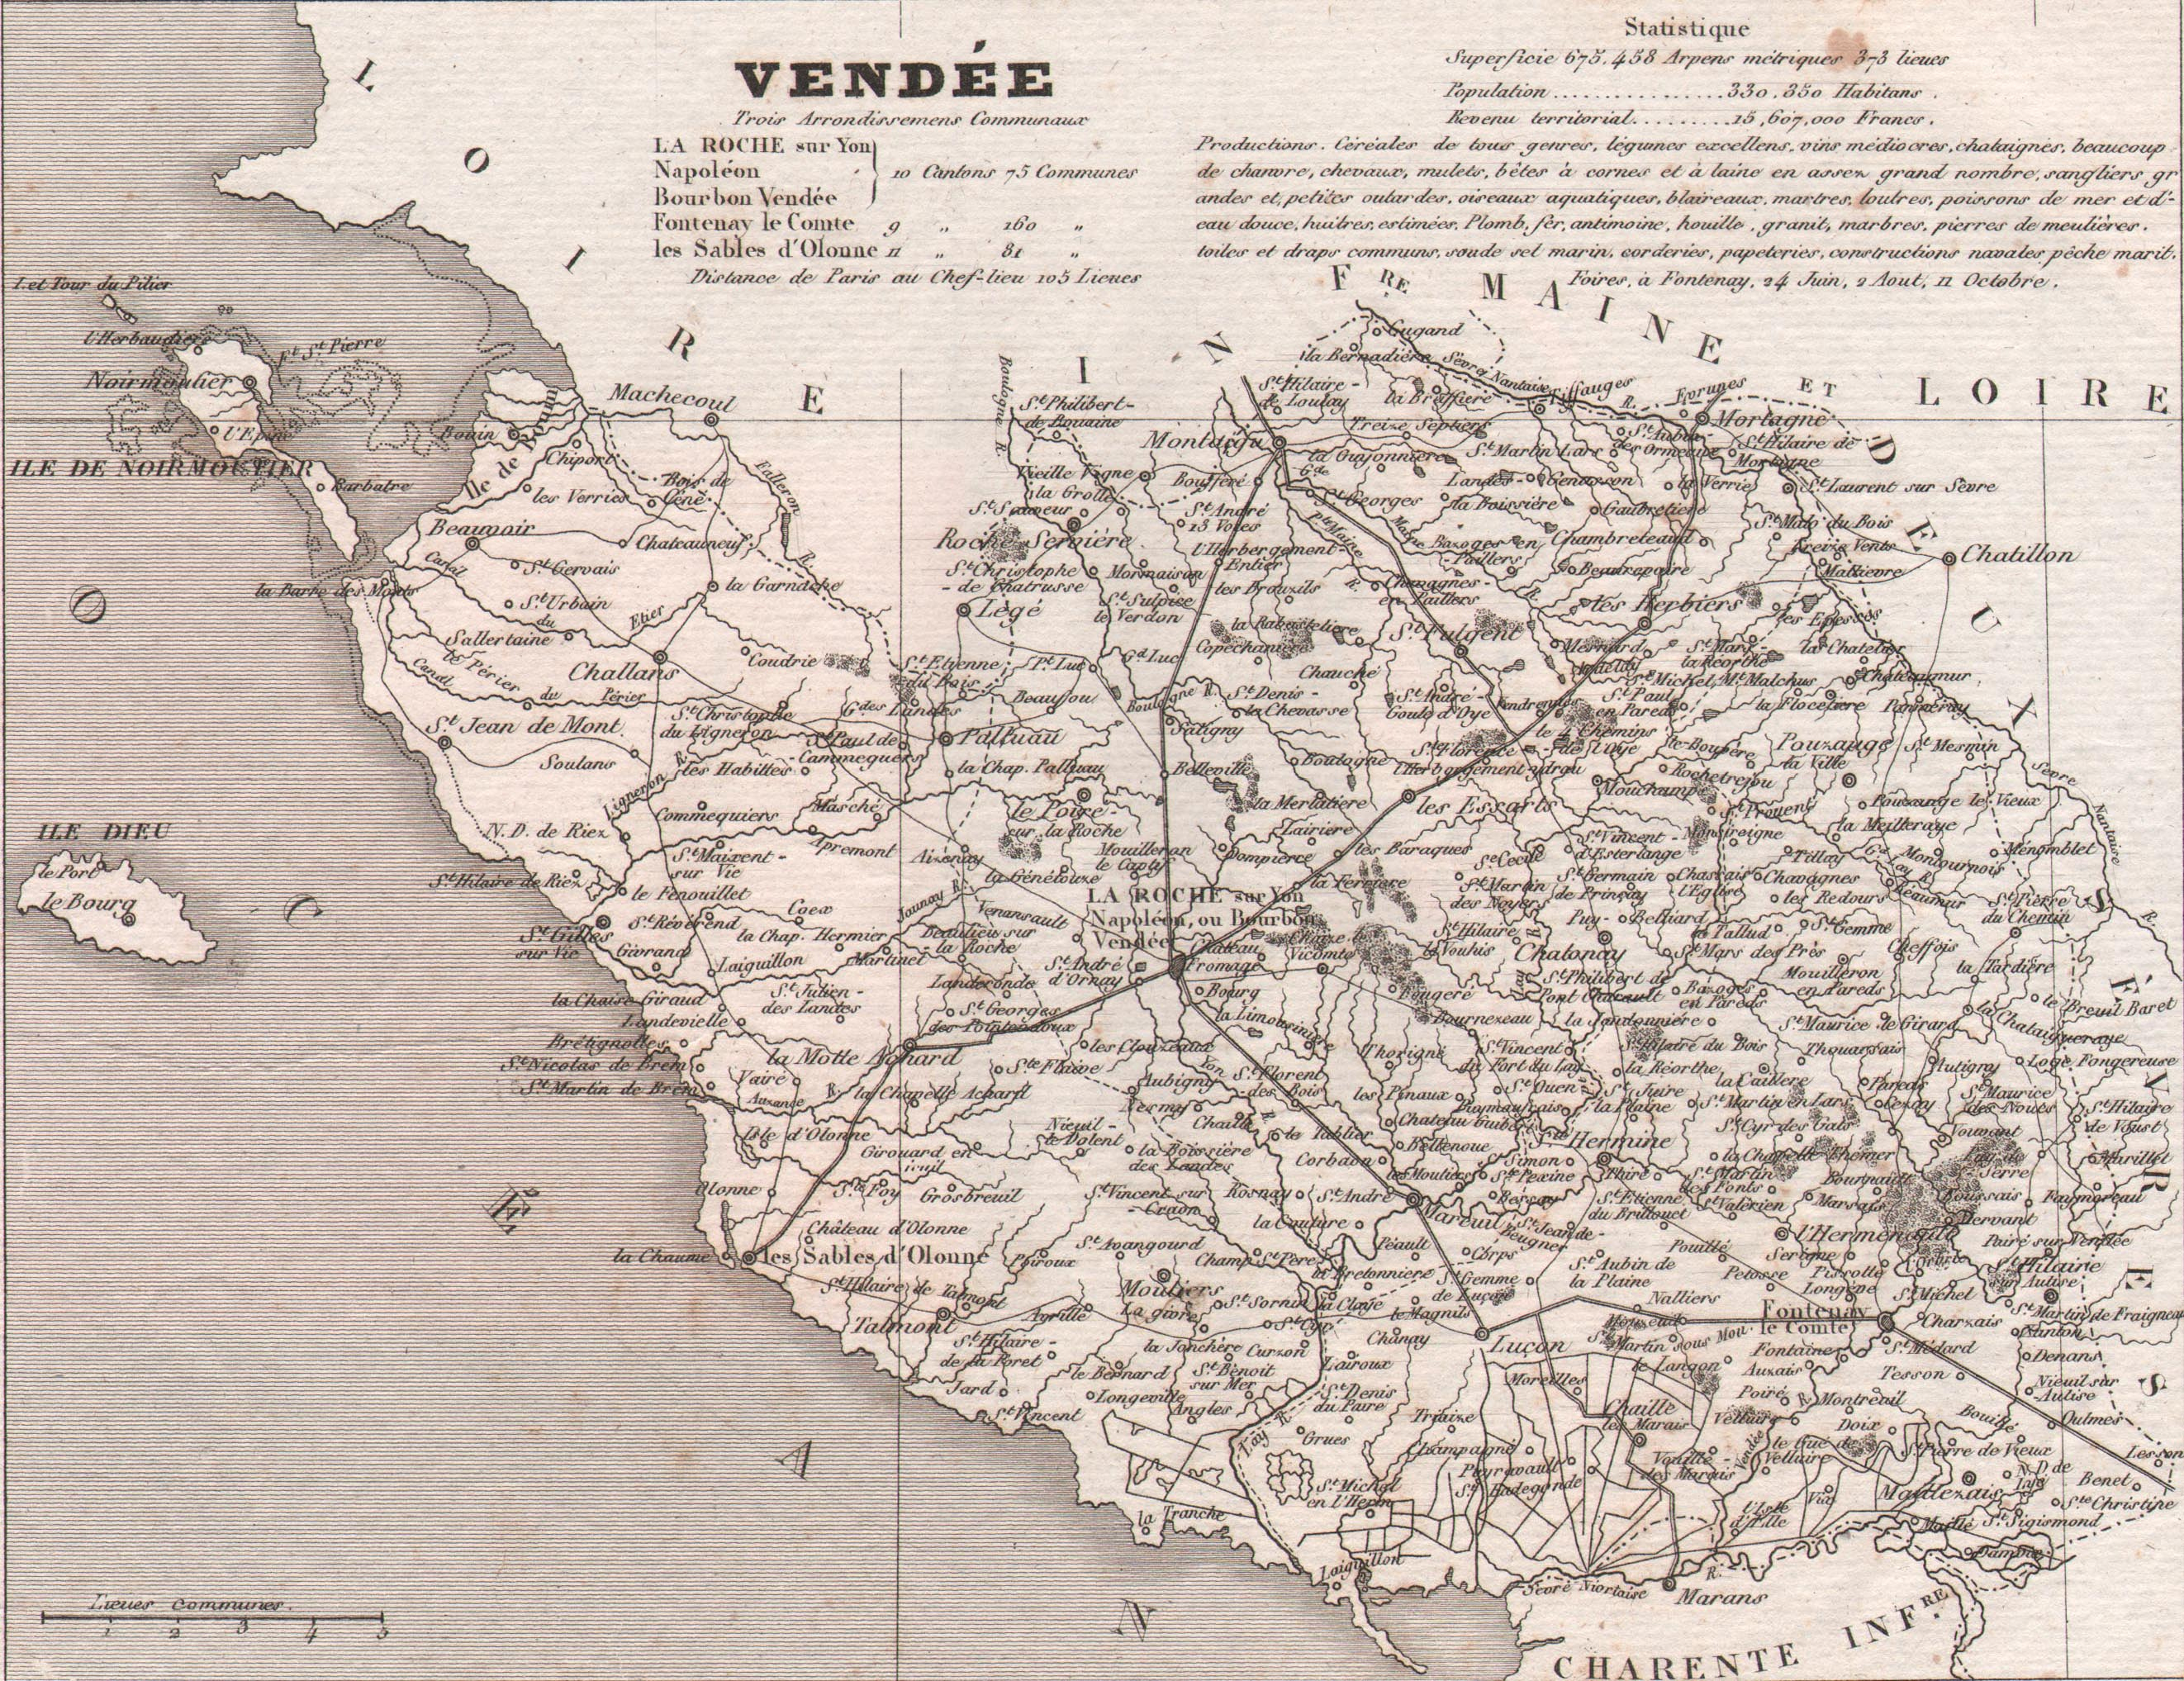 85 - Vendée